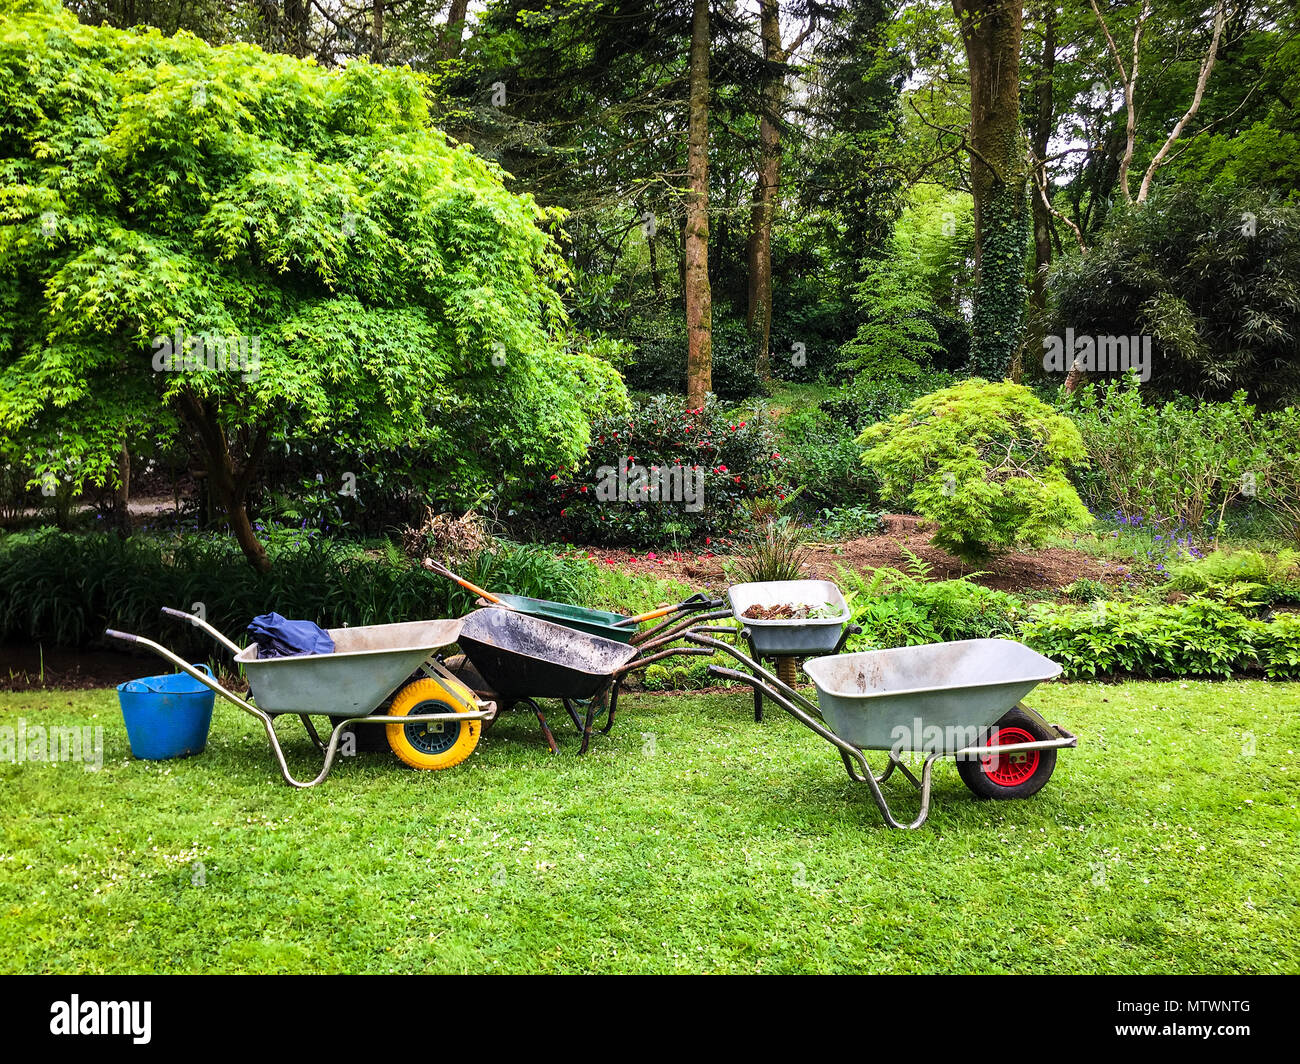 Fünf schubkarren stehen bereit für die Verwendung auf einem Garten Rasen. Stockfoto